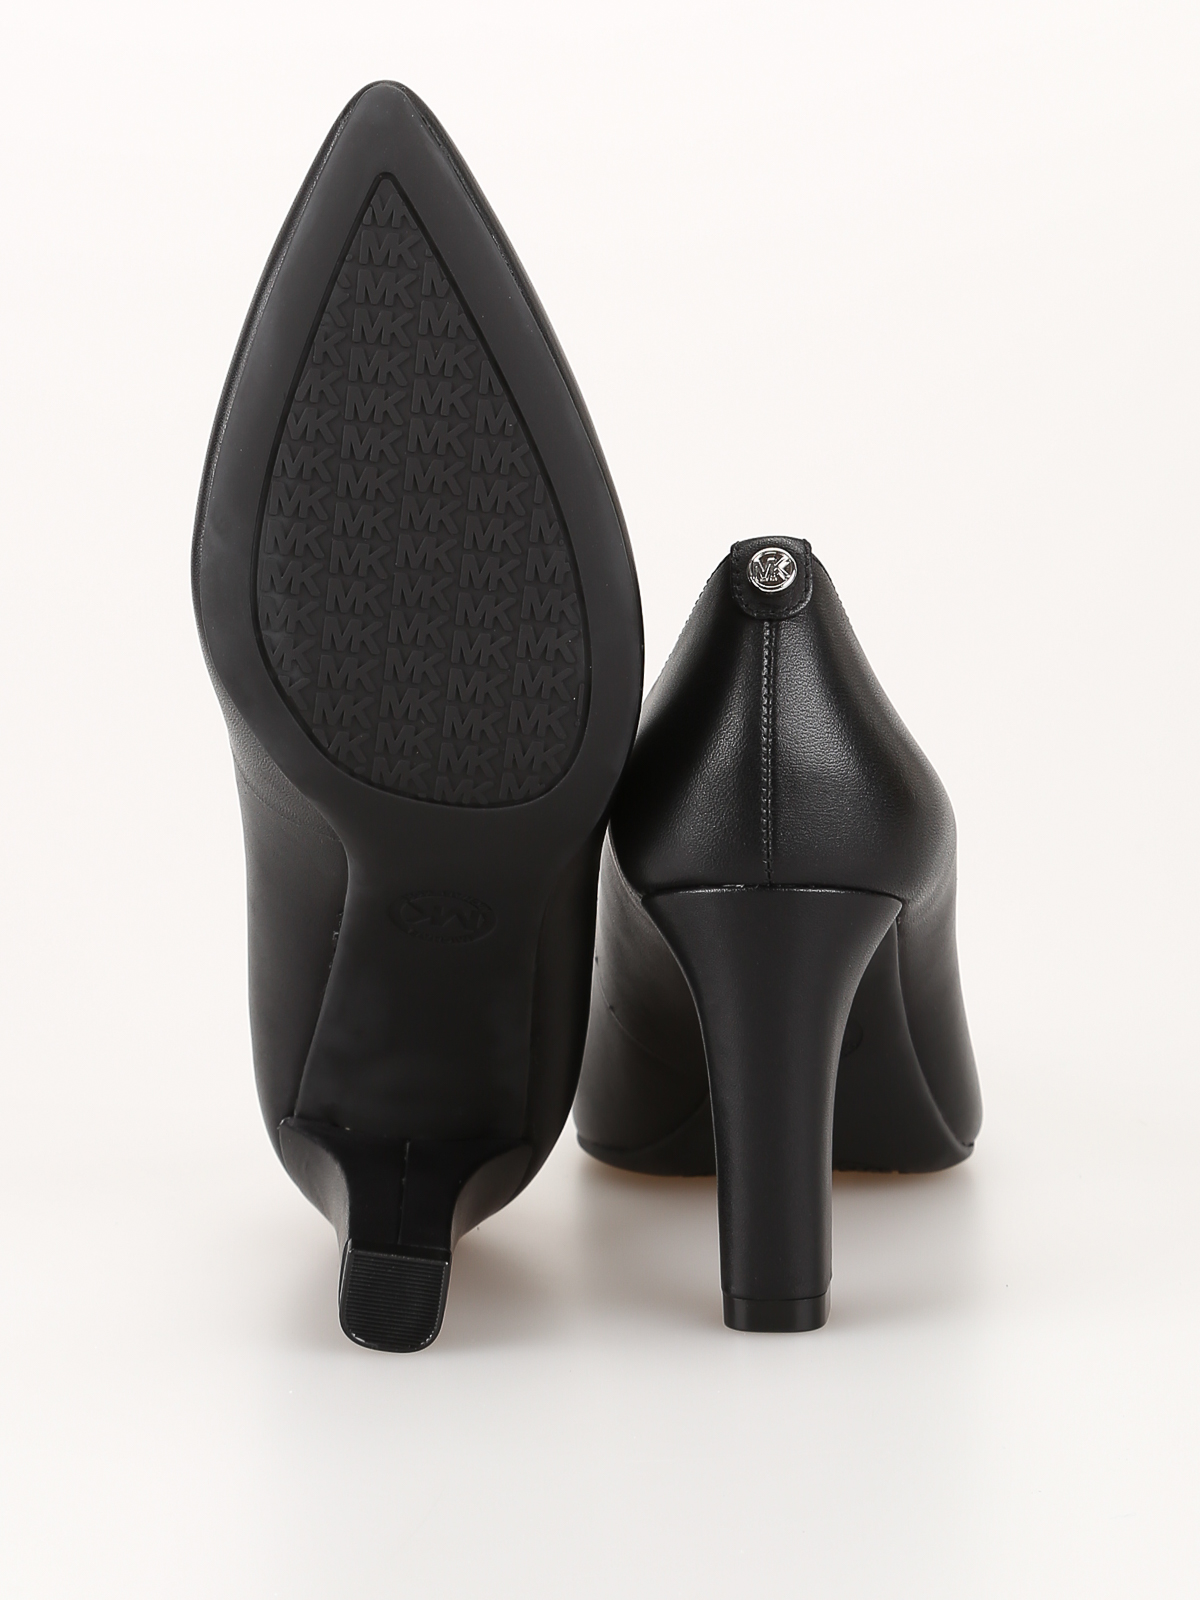 Court shoes Michael Kors - Abbi Flex pumps - 40F7ABMP1L001 